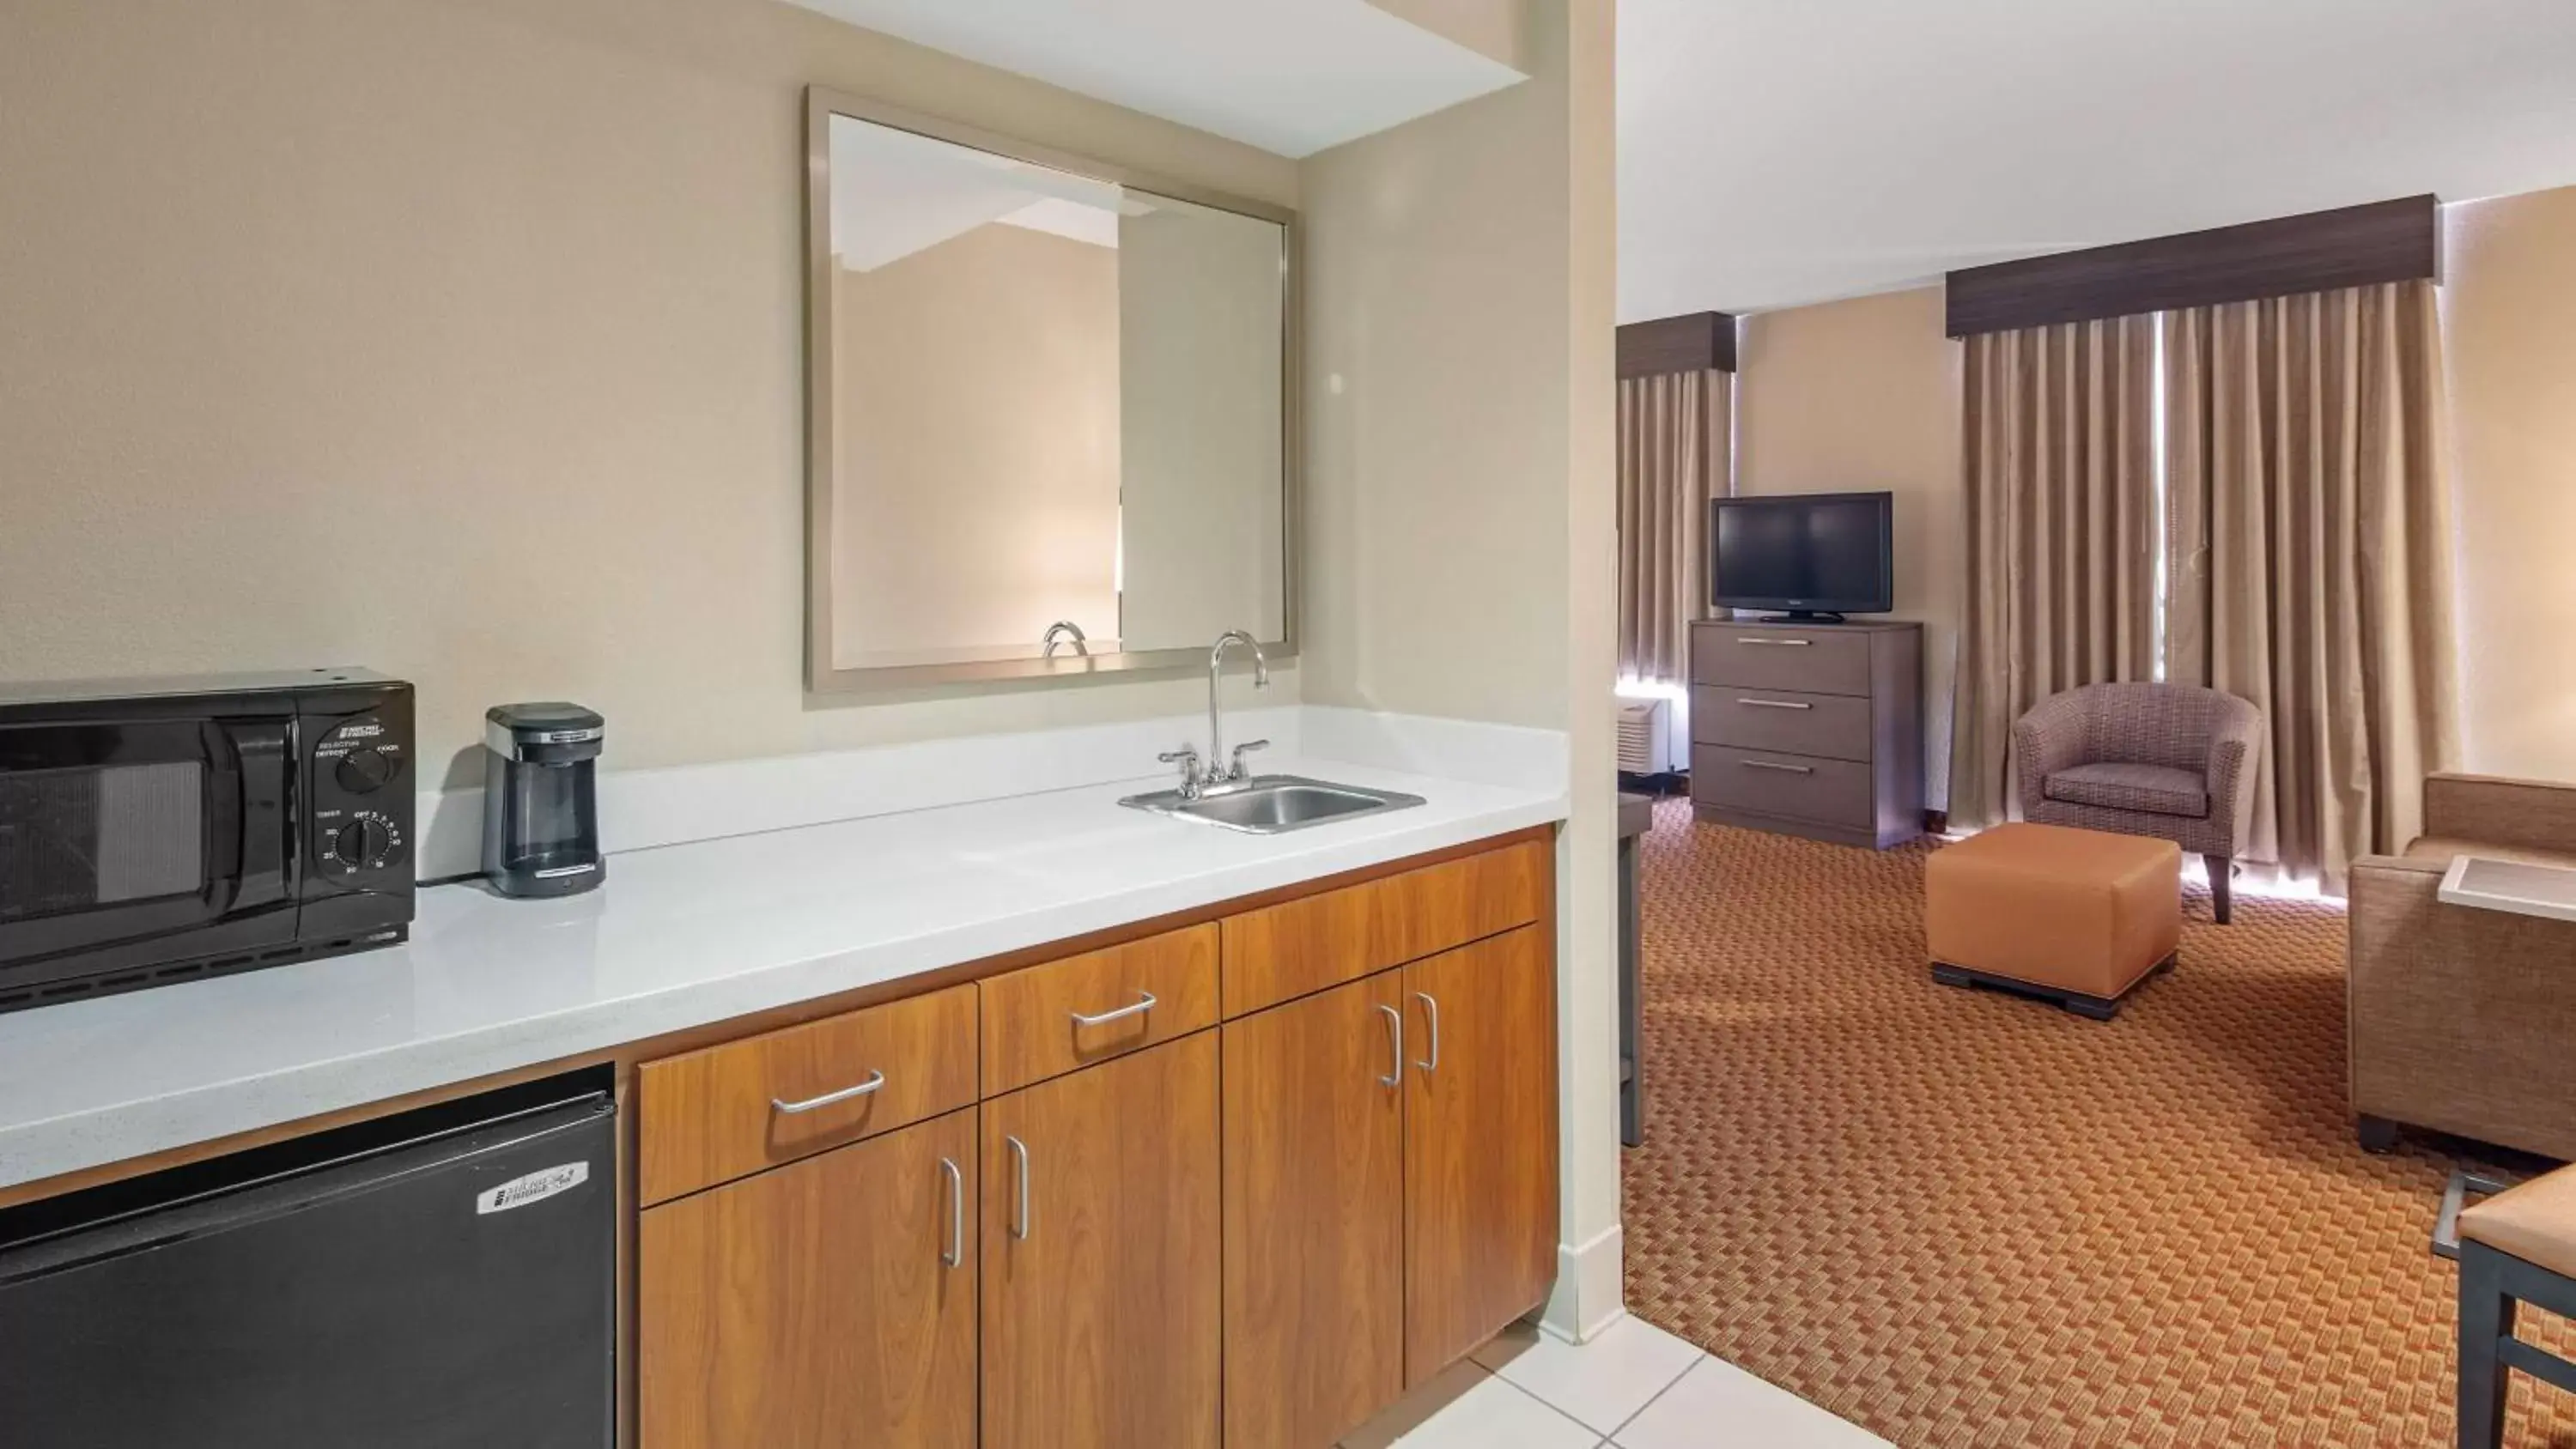 On site, Bathroom in Best Western Plus Kendall Hotel & Suites